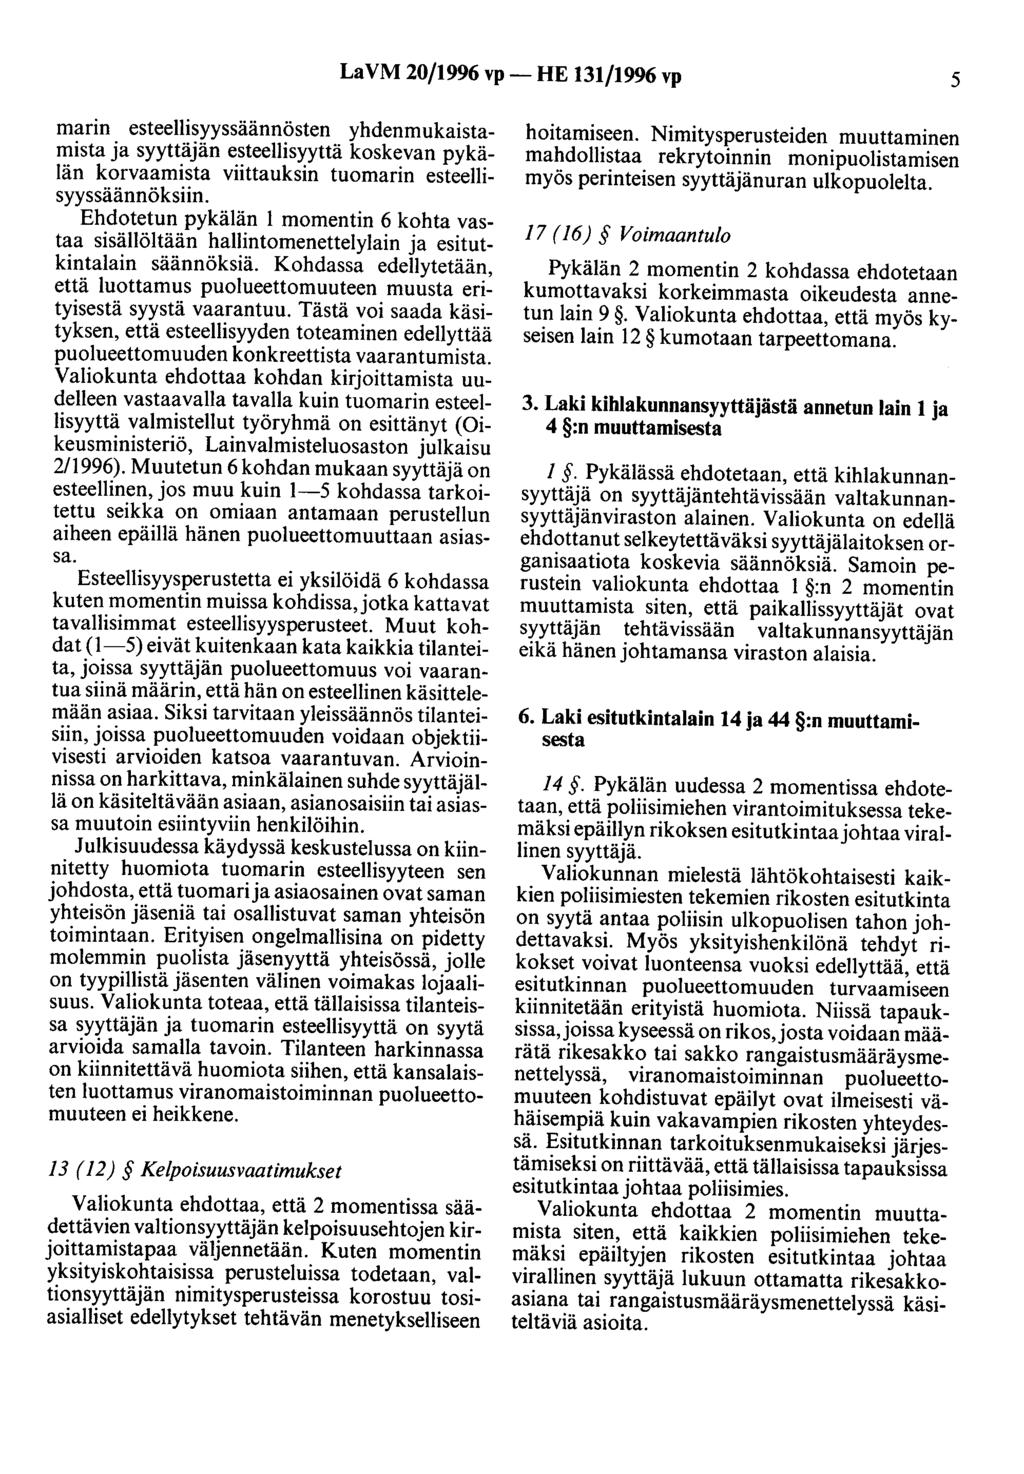 LaVM 20/1996 vp- HE 131/1996 vp 5 marin esteellisyyssäännösten yhdenmukaistamista ja syyttäjän esteellisyyttä koskevan pykälän korvaamista viittauksin tuomarin esteellisyyssäännöksiin.